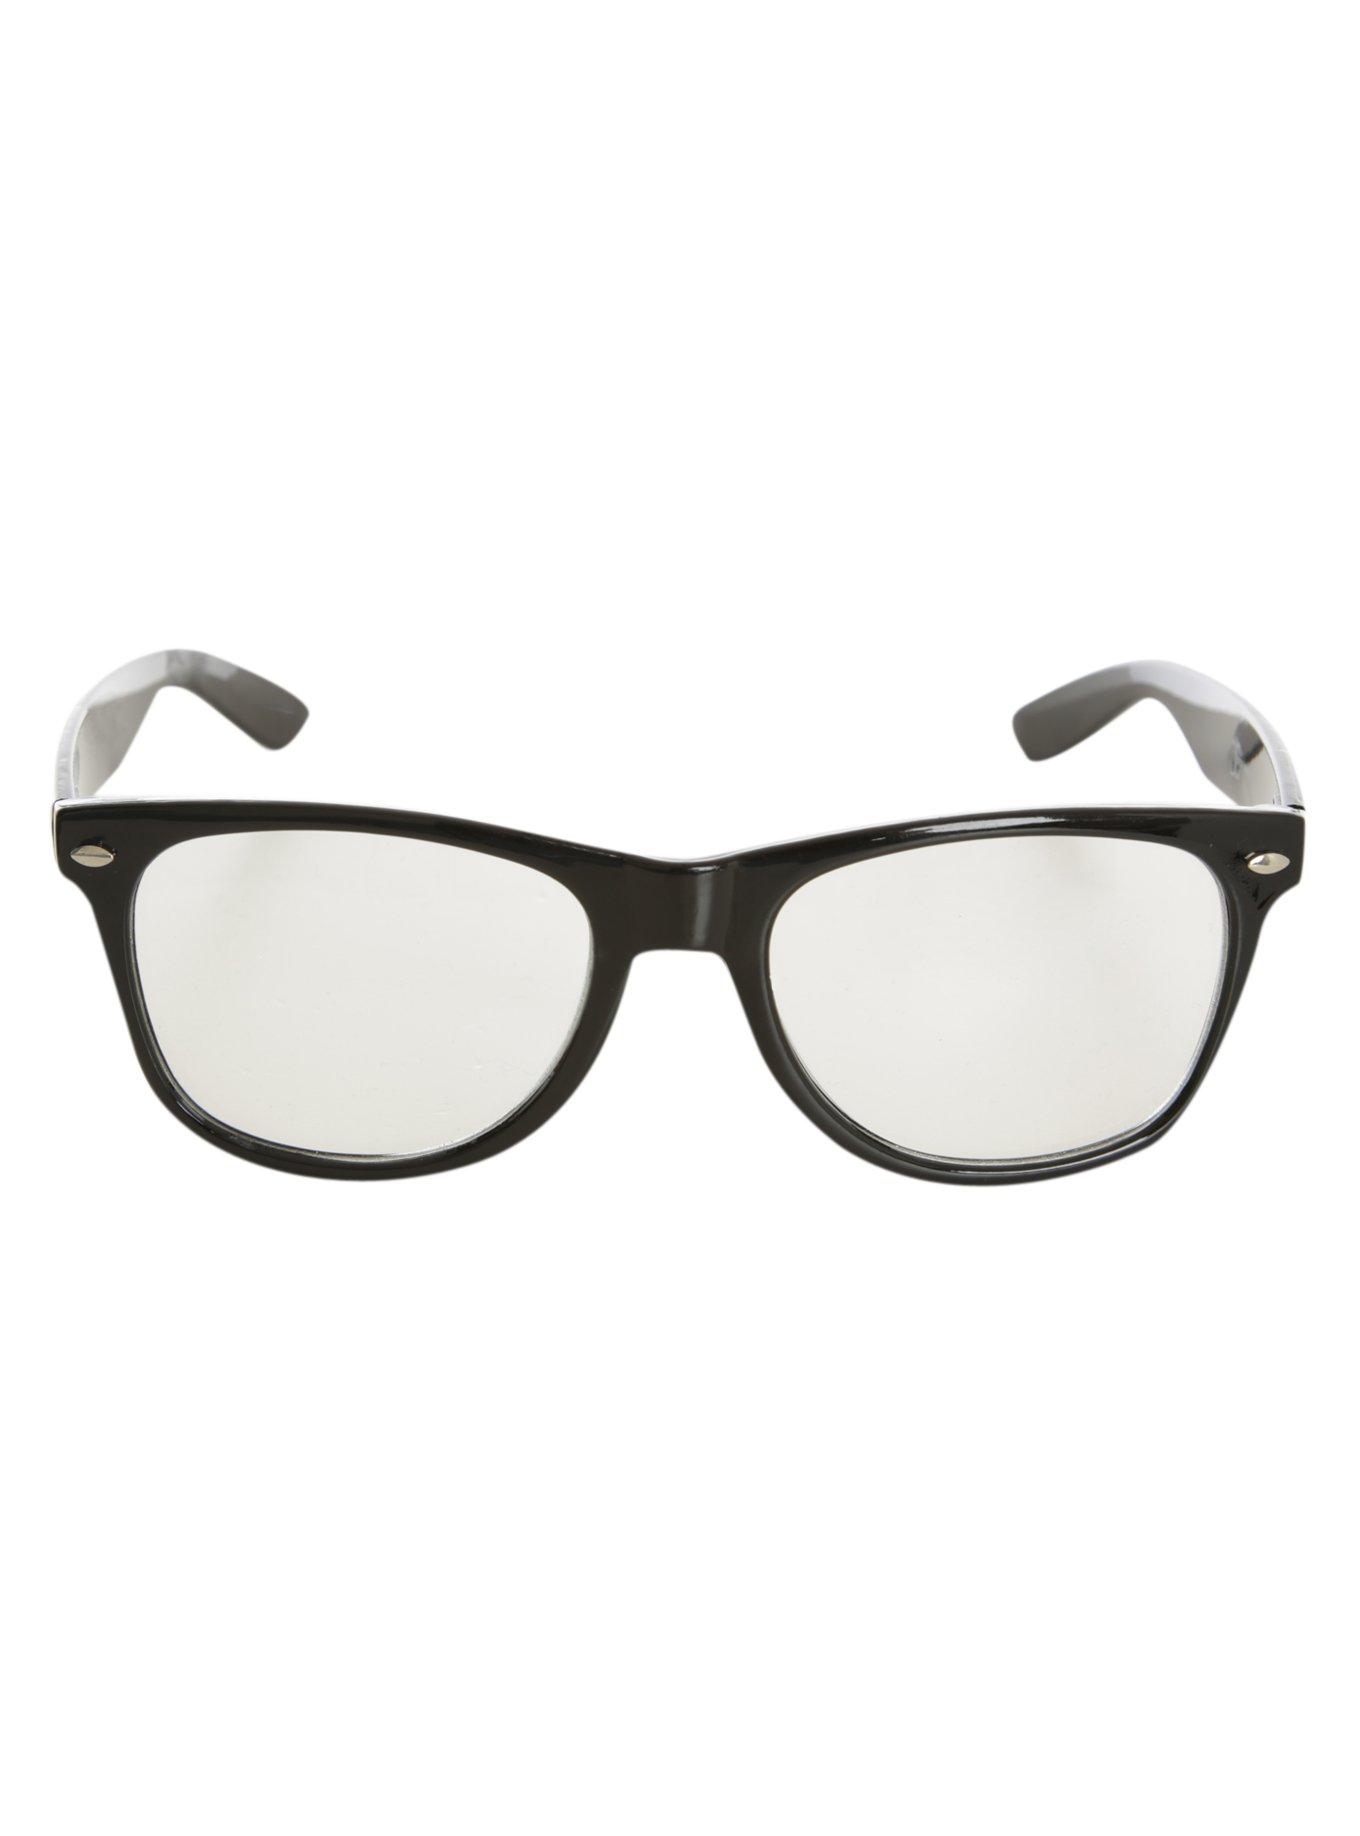 Nerd Glasses, , alternate